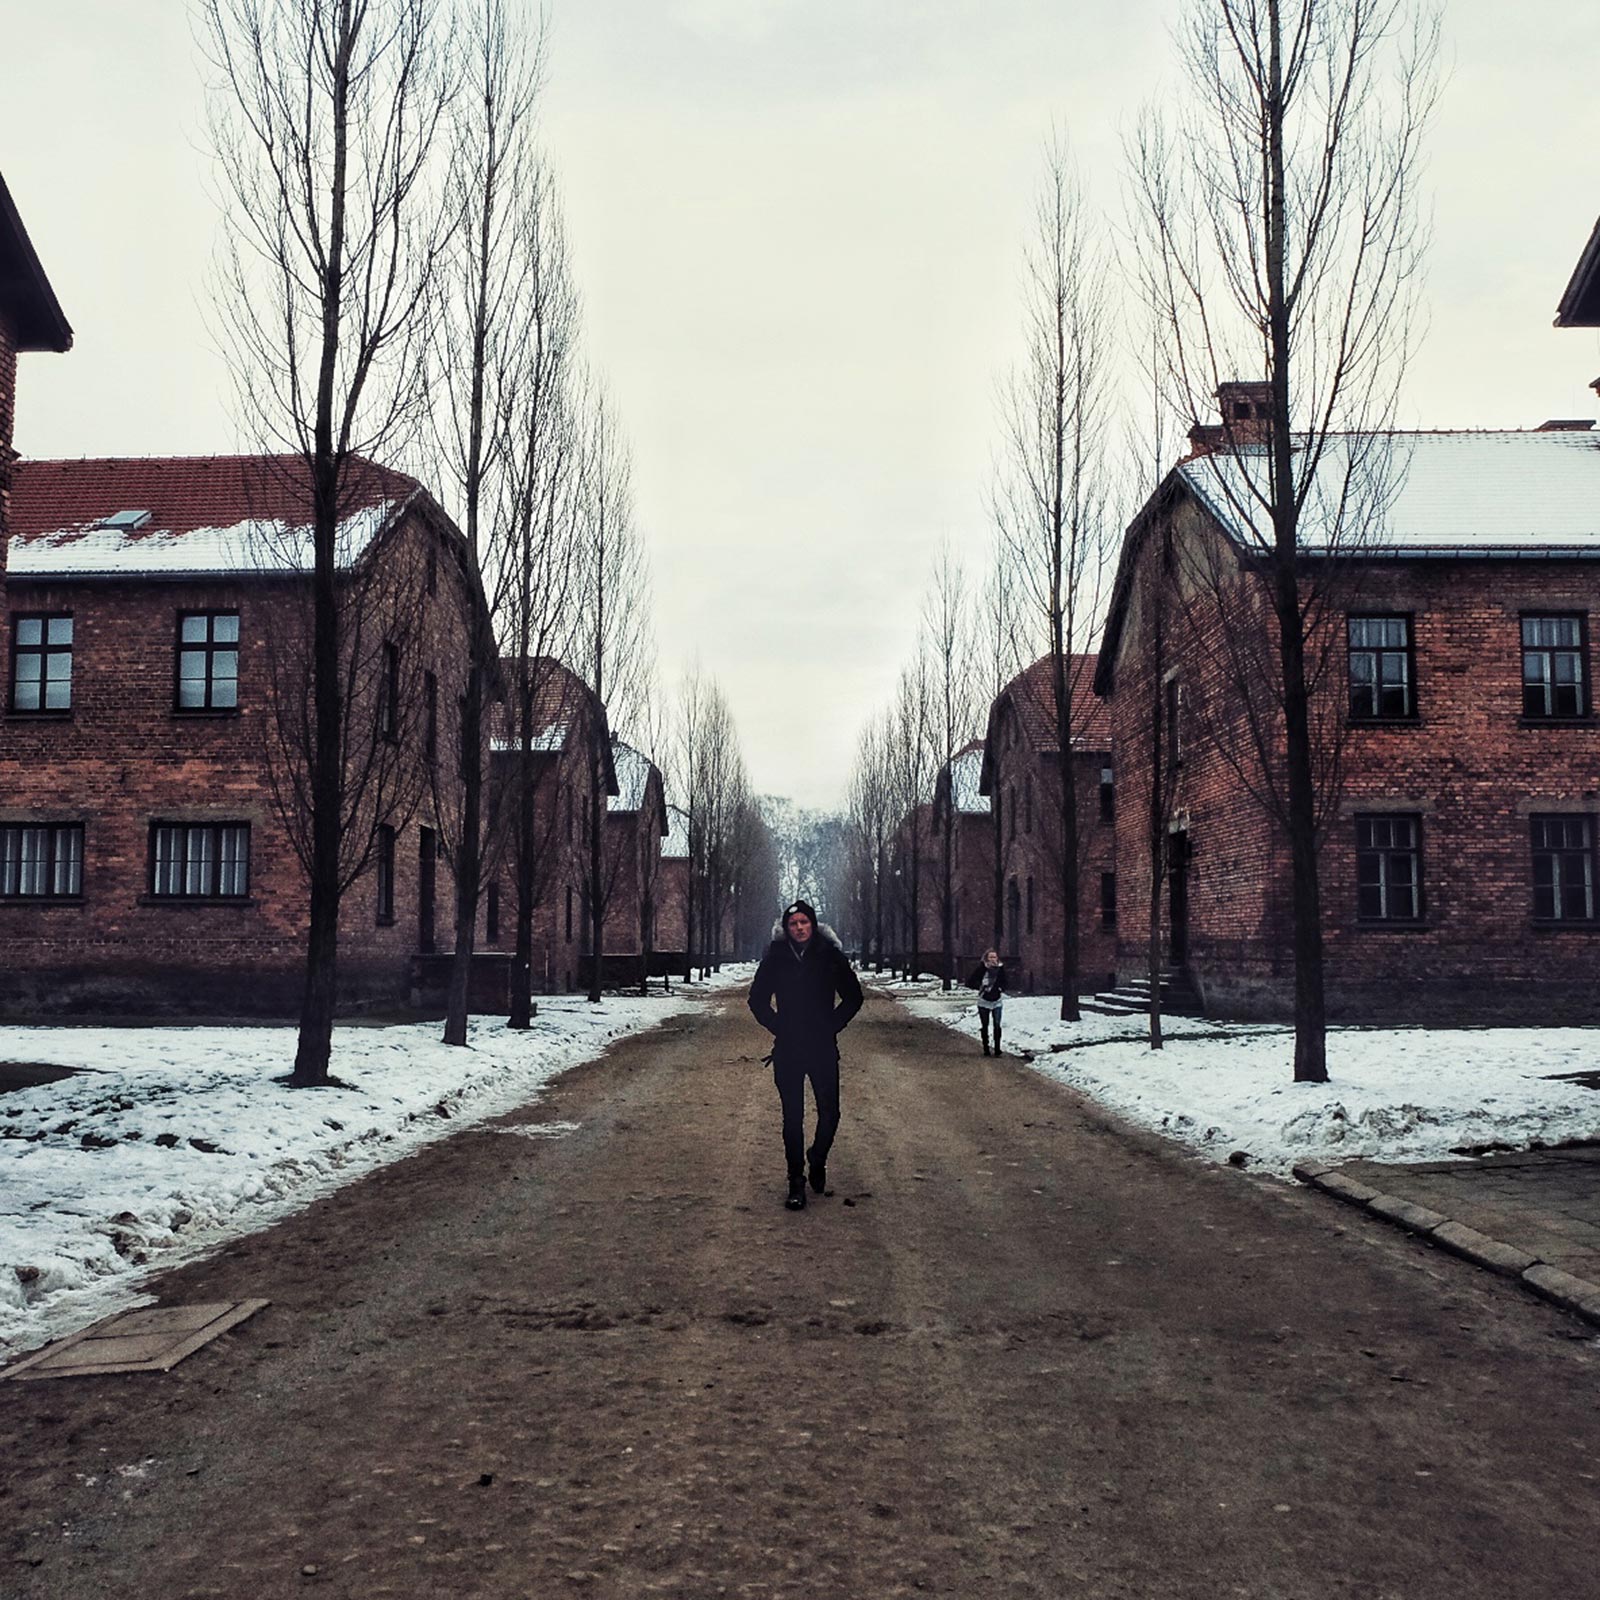 David Simpson in Auschwitz, Oświęcim, Poland. Mixed feelings in Auschwitz